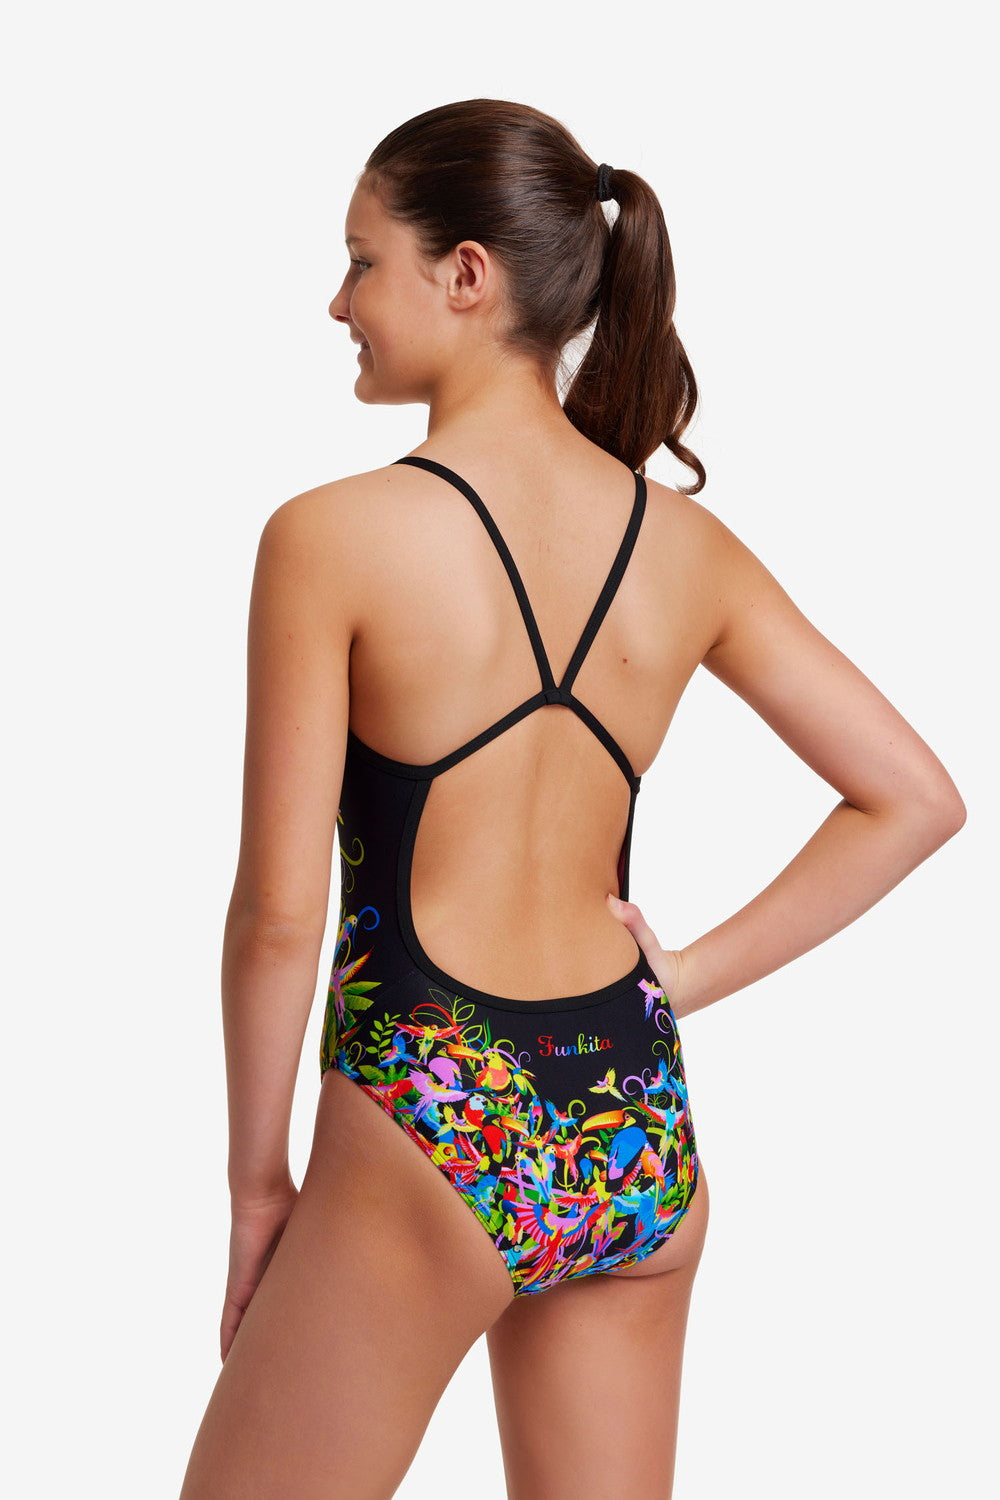 Macaw Magic Single Strap One Piece Swimsuit FS16G - Girls